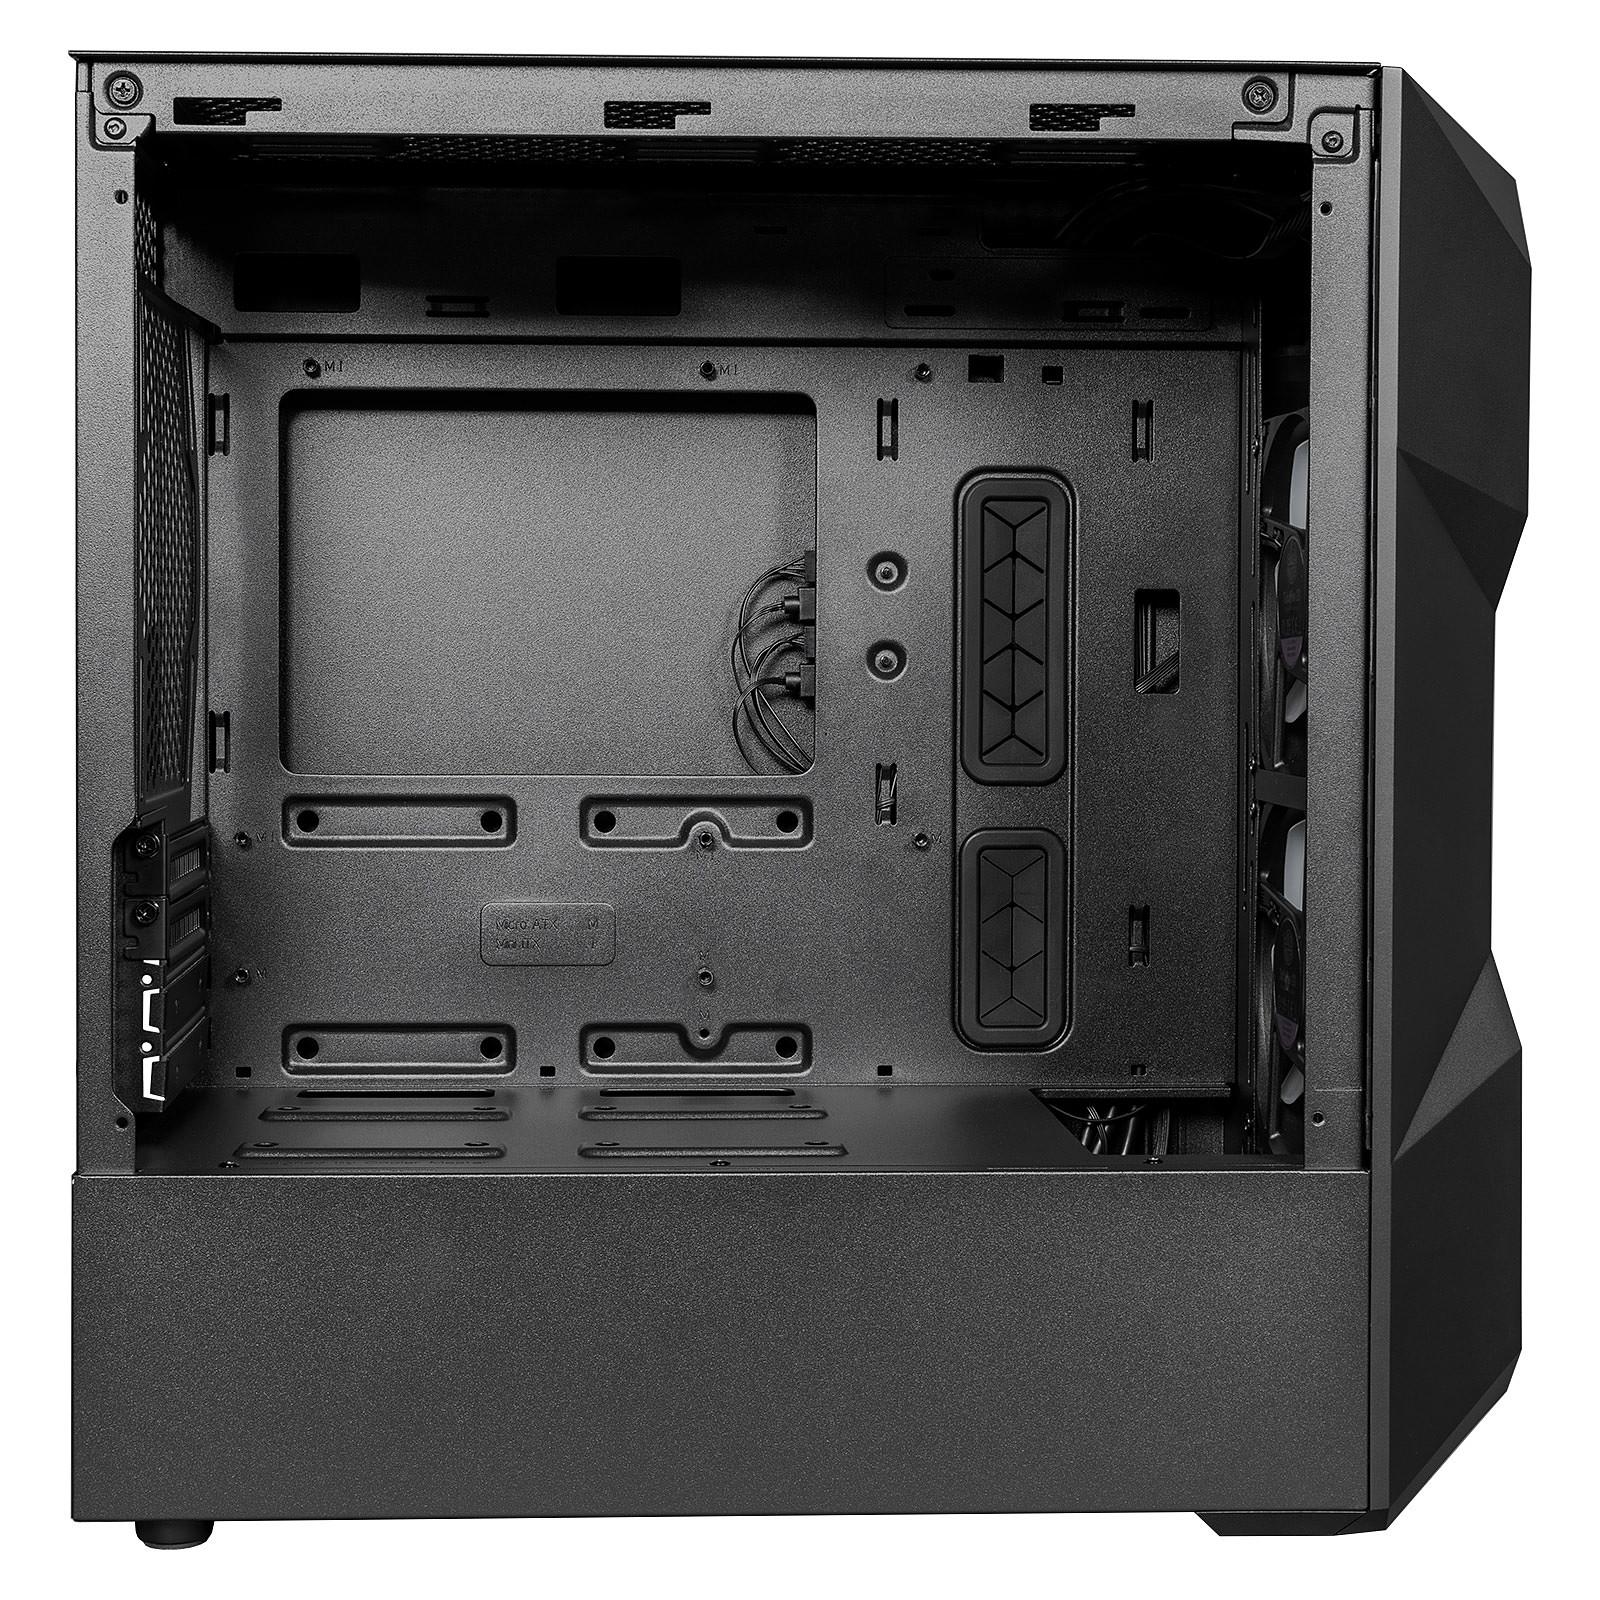 Cooler Master MASTERBOX MATX TD300 MESH CASE (BLACK)